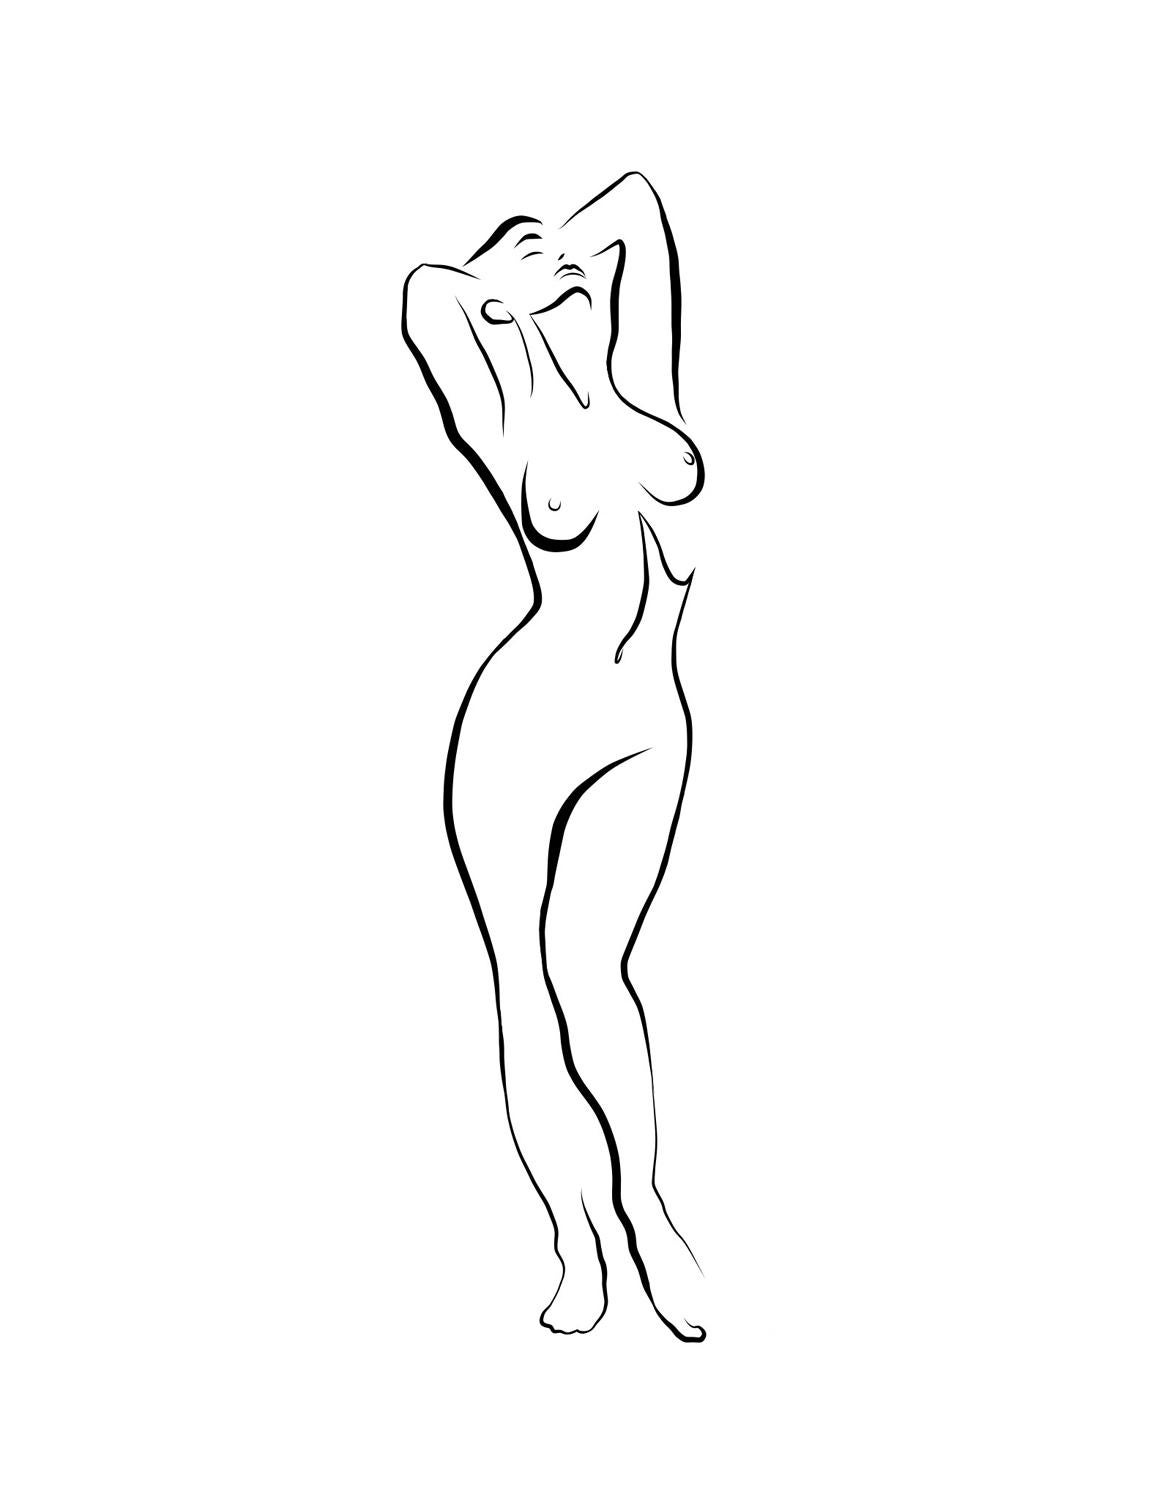 Michael Binkley Nude Print - Haiku #34 - Digital Vector Drawing Standing Female Nude Woman Figure